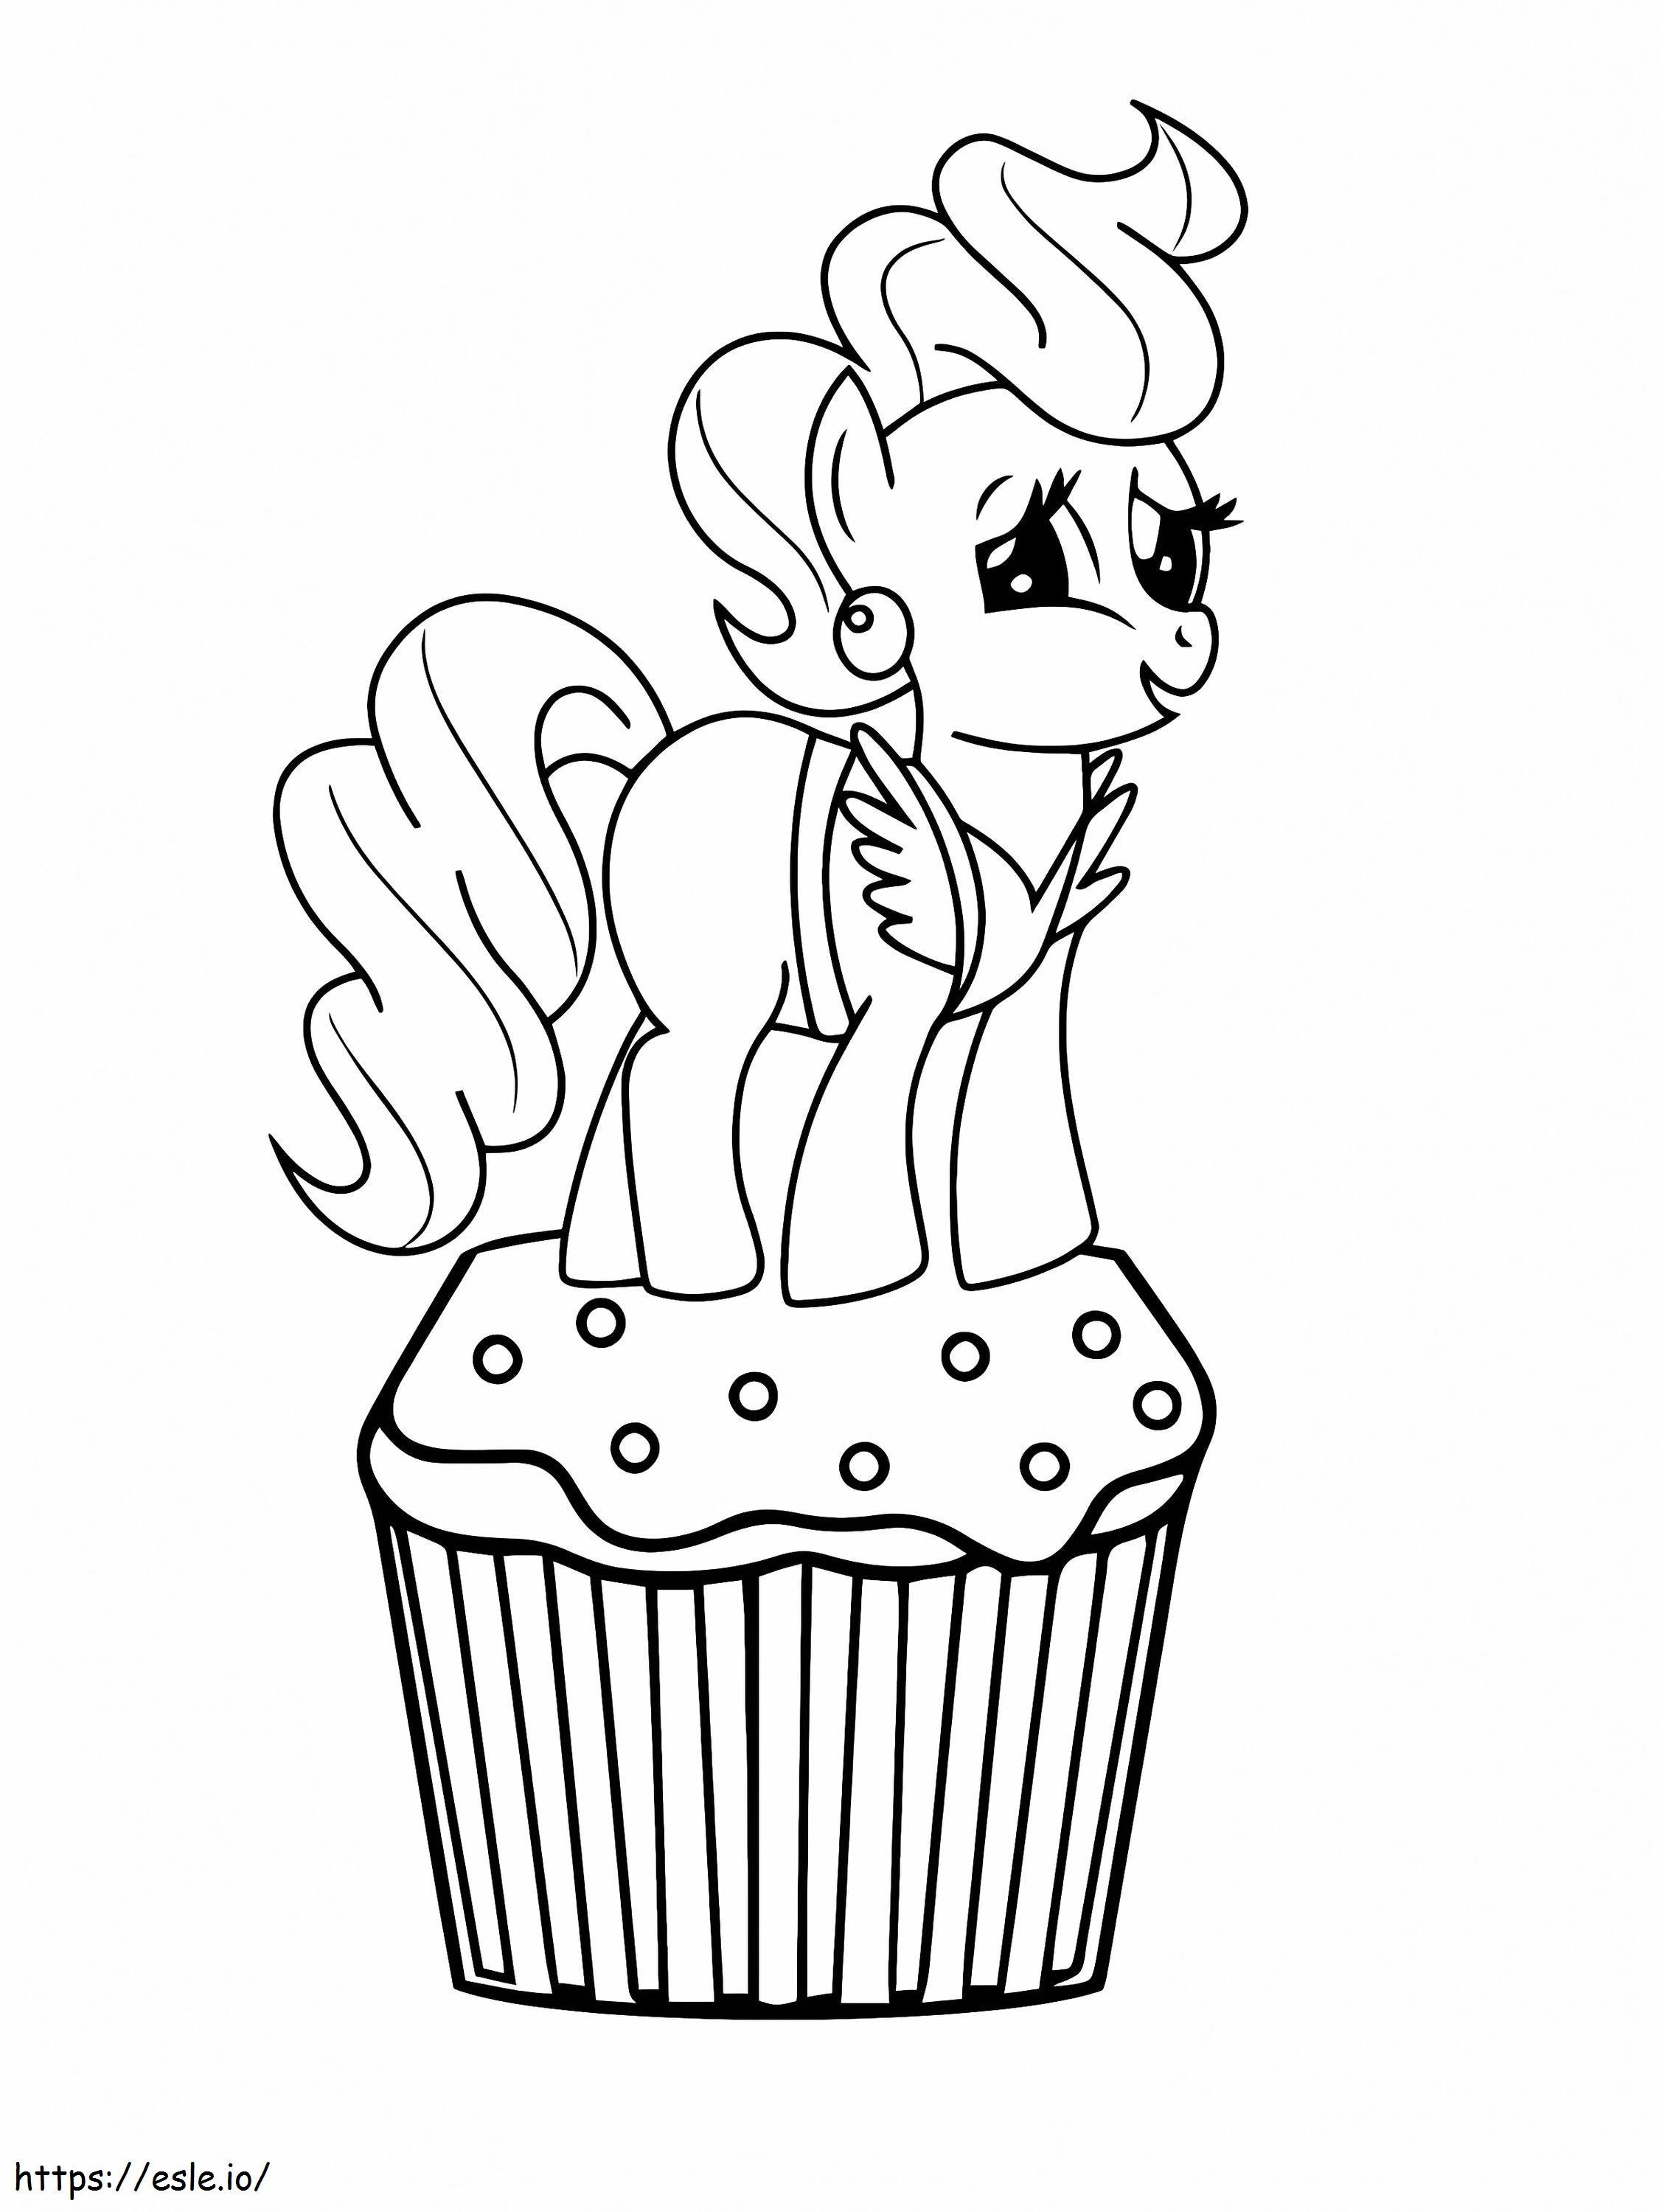 La signora torta sulla parte superiore del cupcake nel mio piccolo pony da colorare